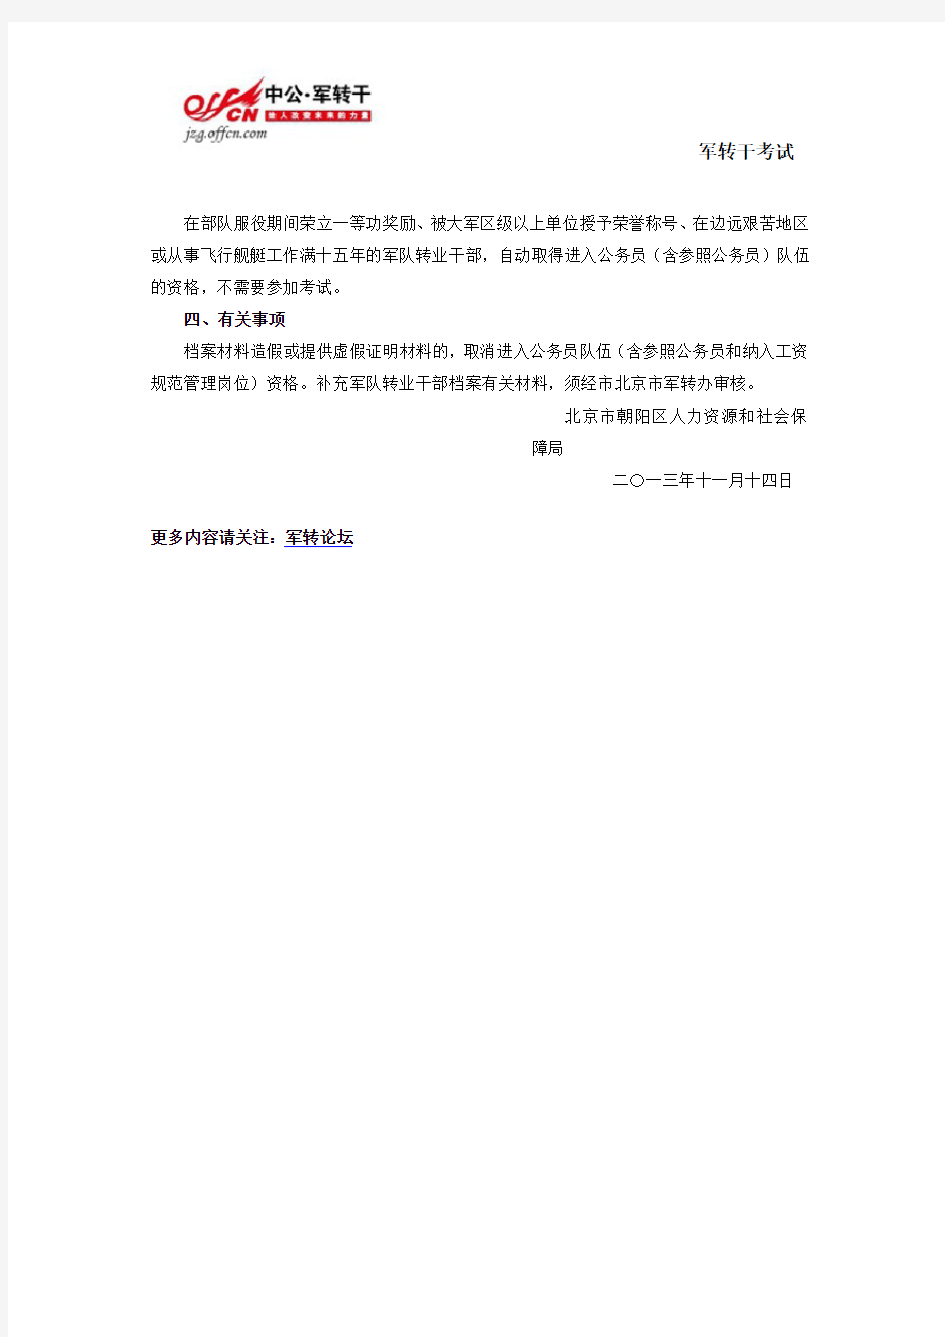 北京朝阳区营职及以下和专业技术军转干部考核赋分及照顾安置办法